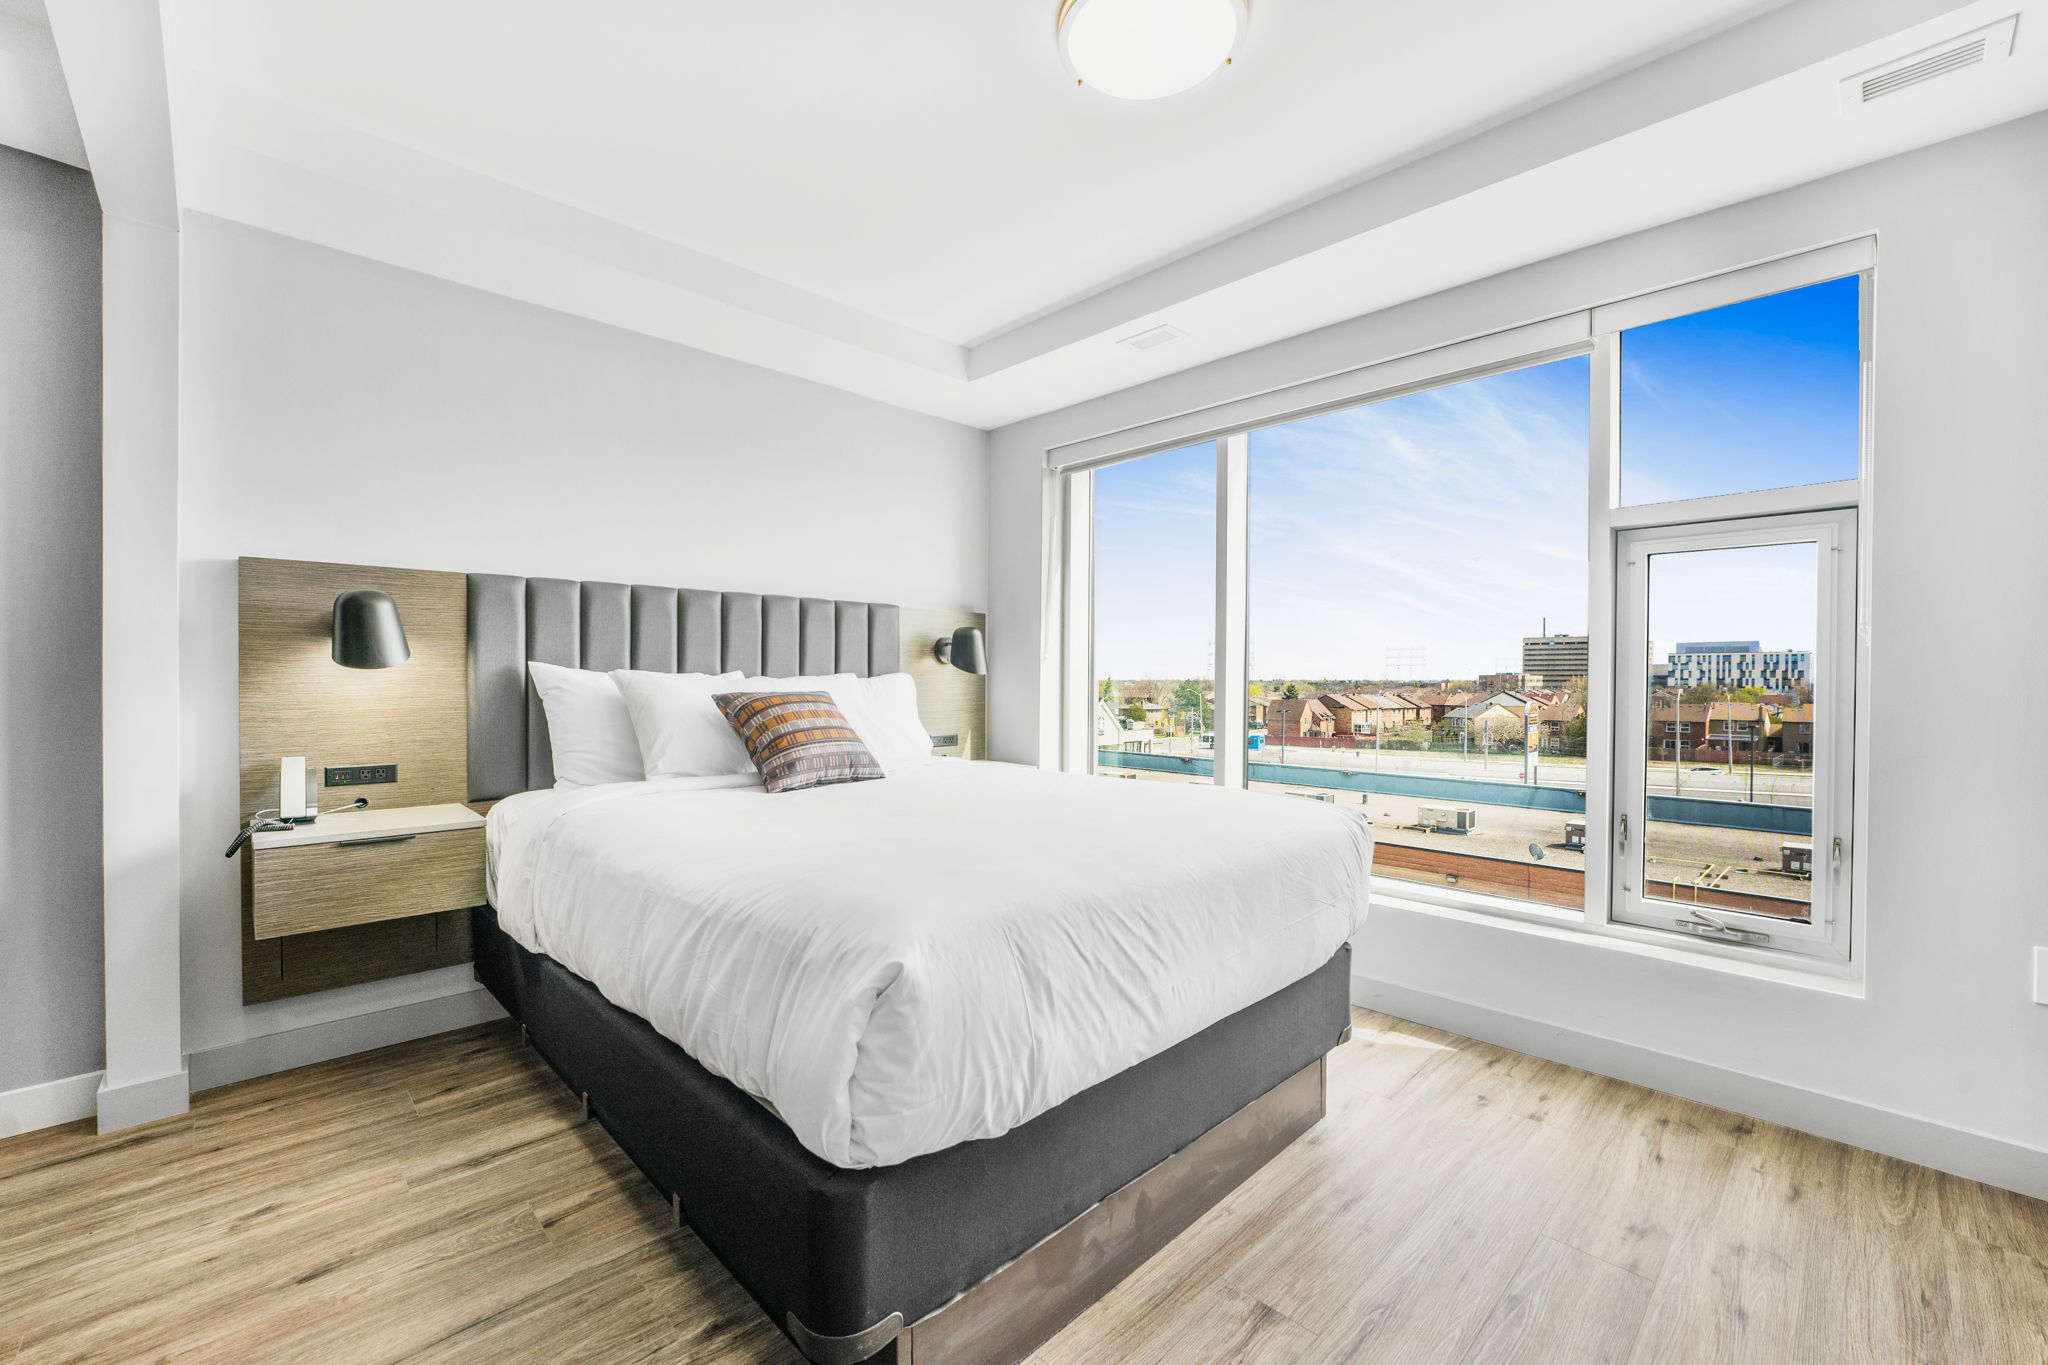 2 Bedroom Deluxe King/Queen Suite with Sofa Bed | Skye Residences